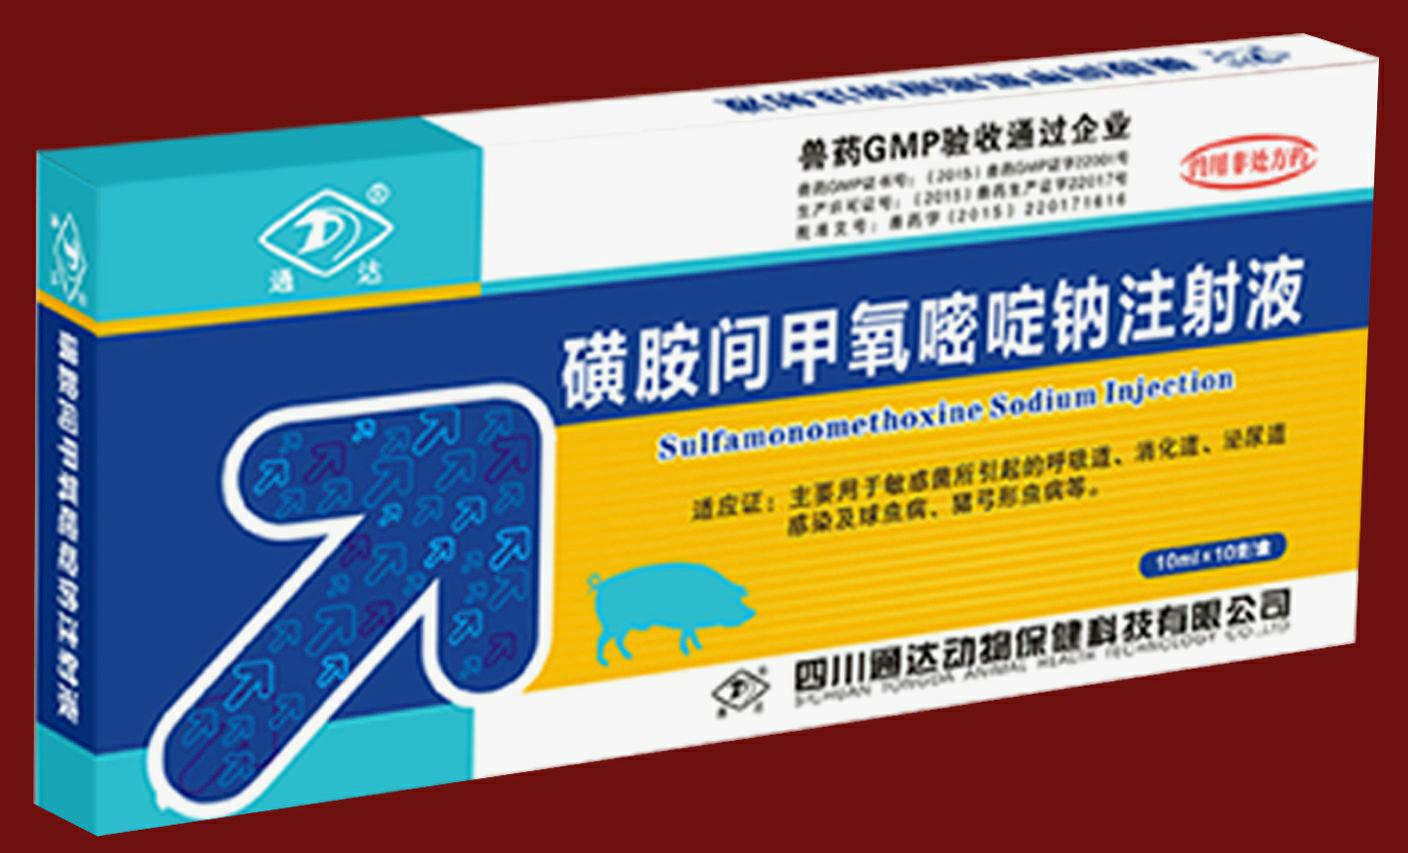 包装盒(磺胺间甲氧嘧啶钠注射液)